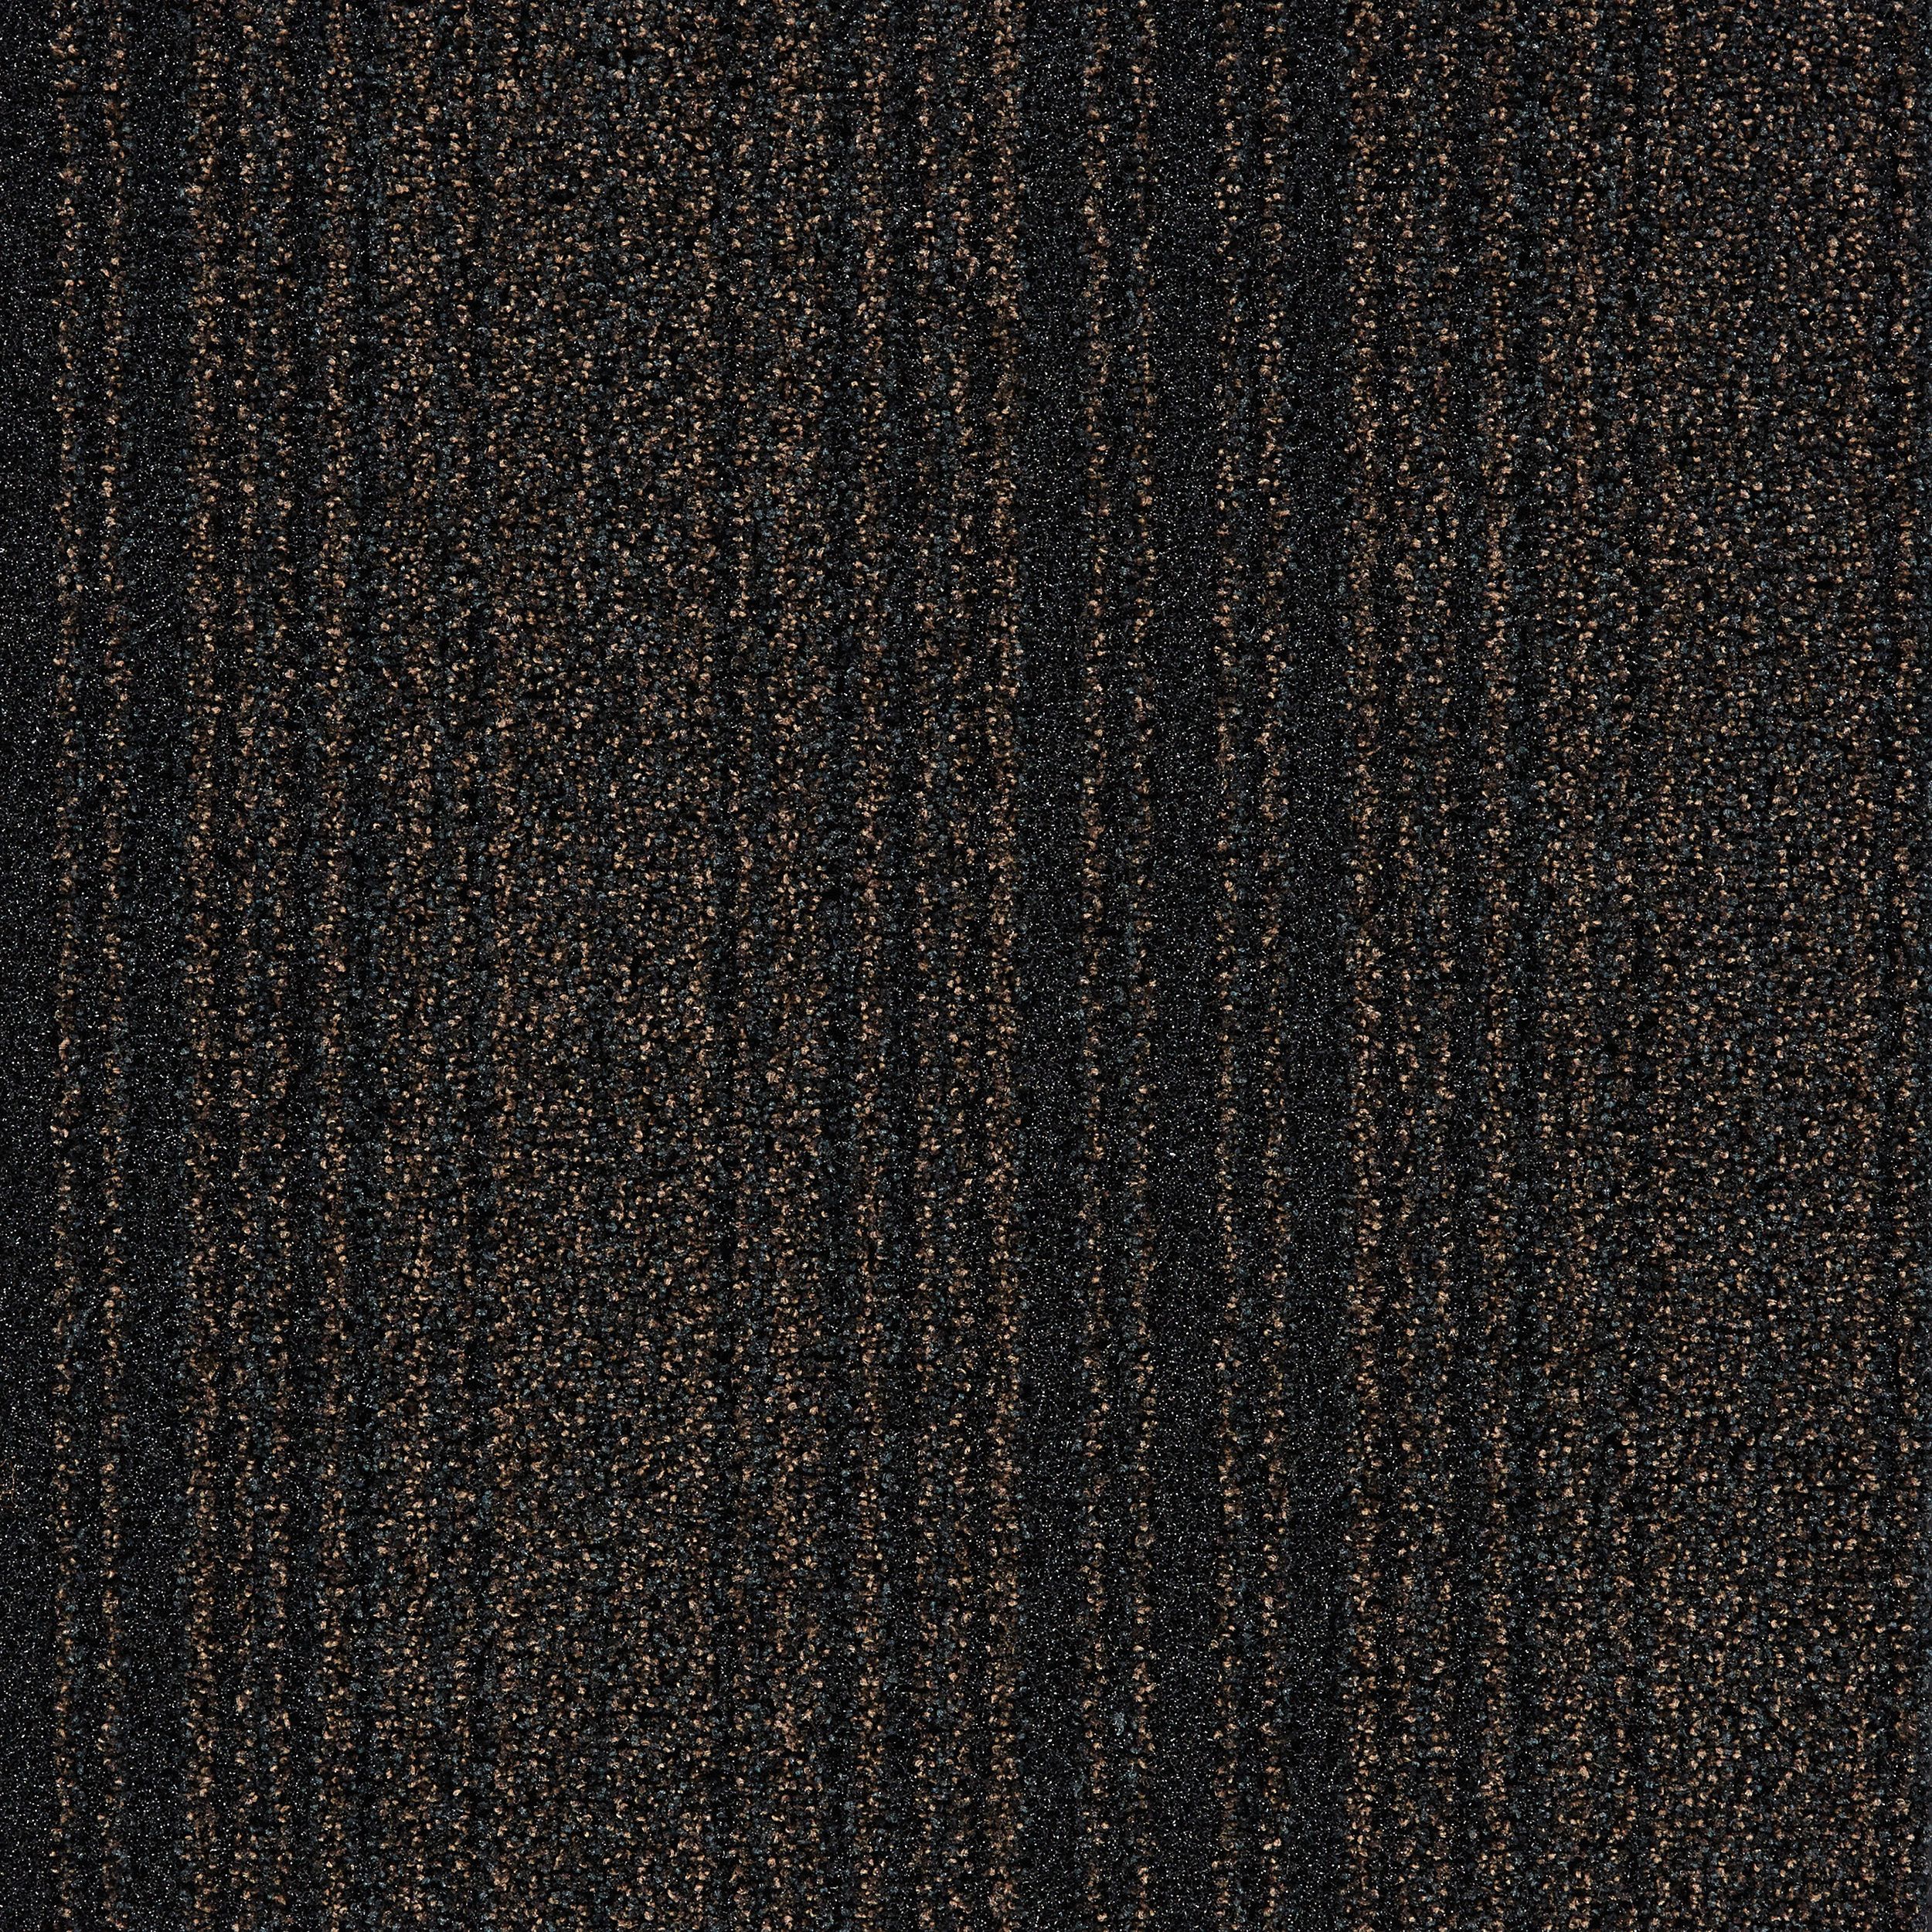 Barricade One Carpet Tile In Brown afbeeldingnummer 1